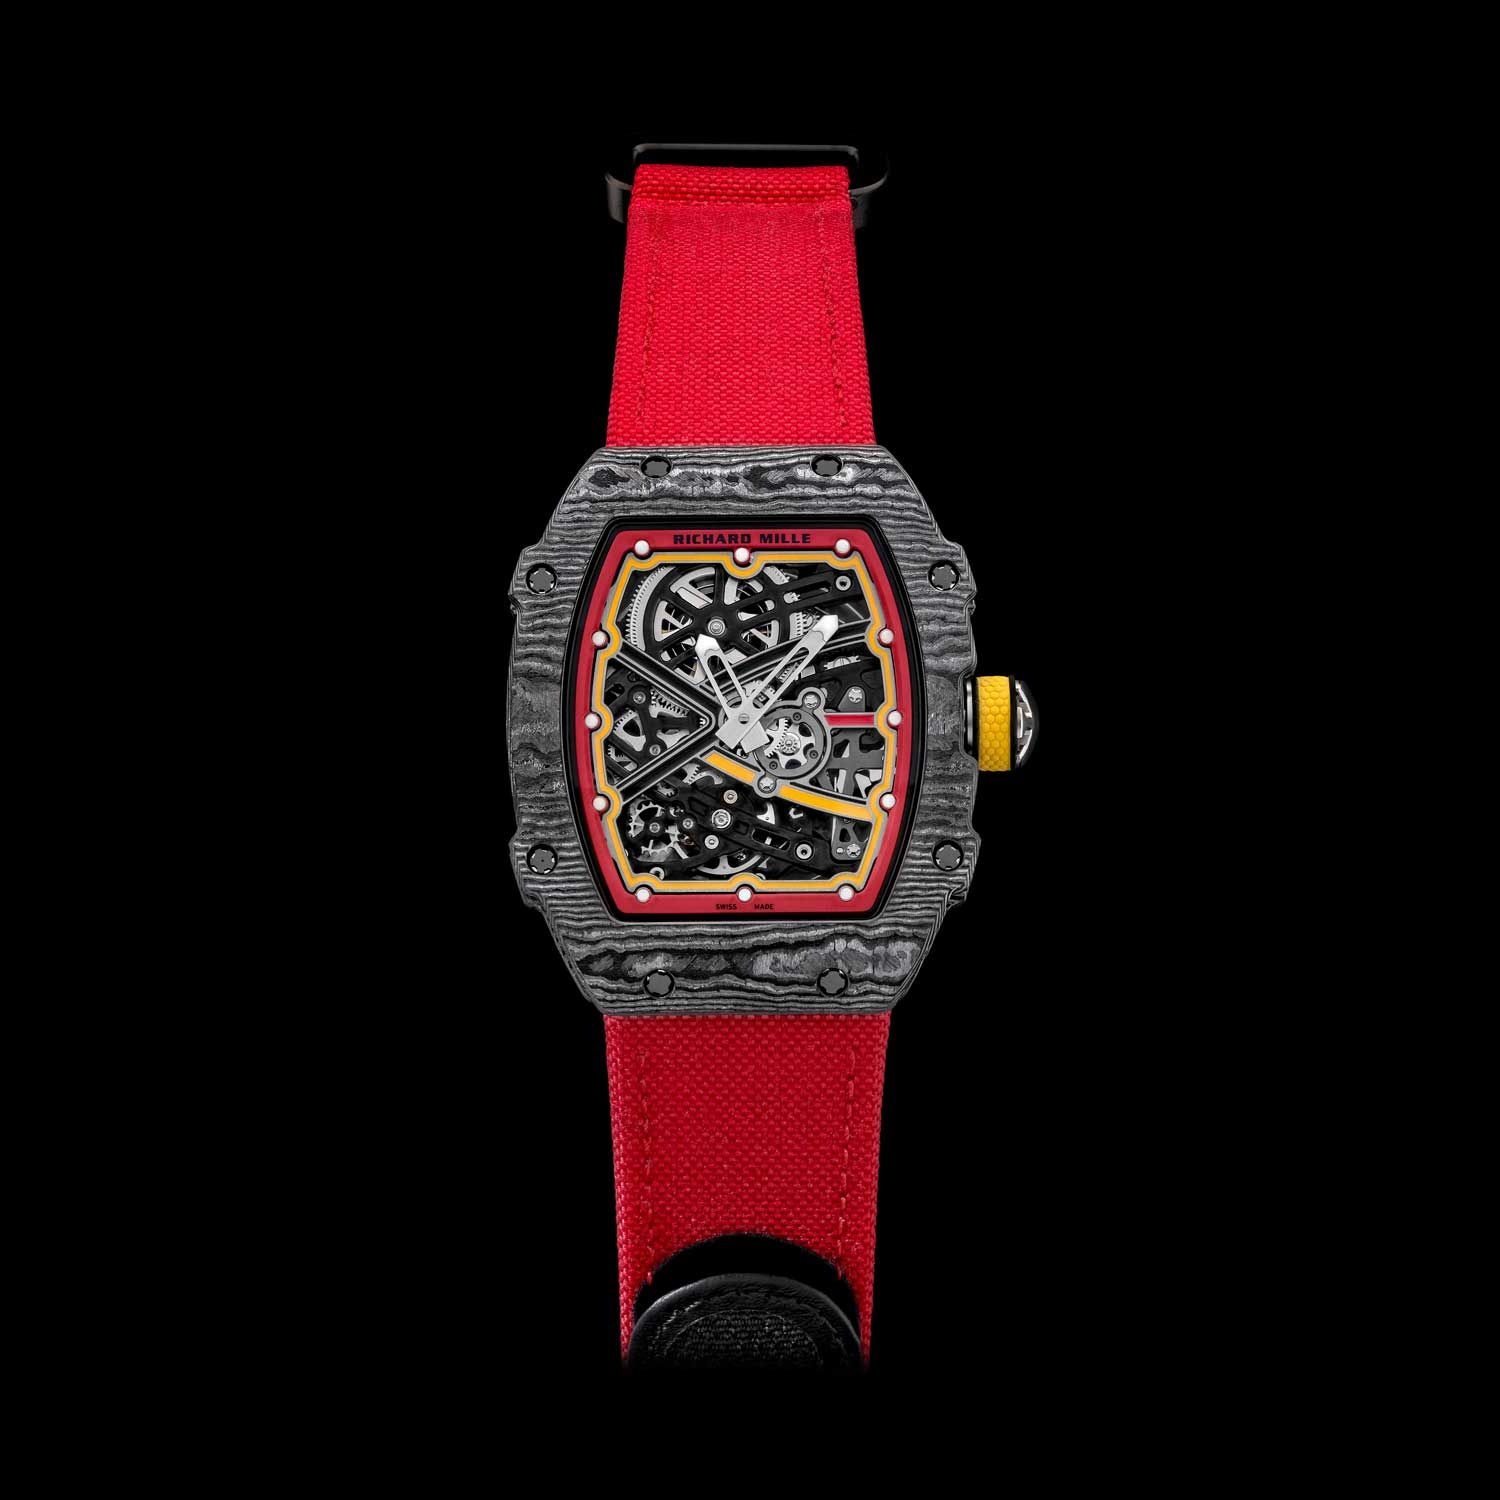 2018 – Richard Mille RM 67-02 Alexander Zverev Edition Watch